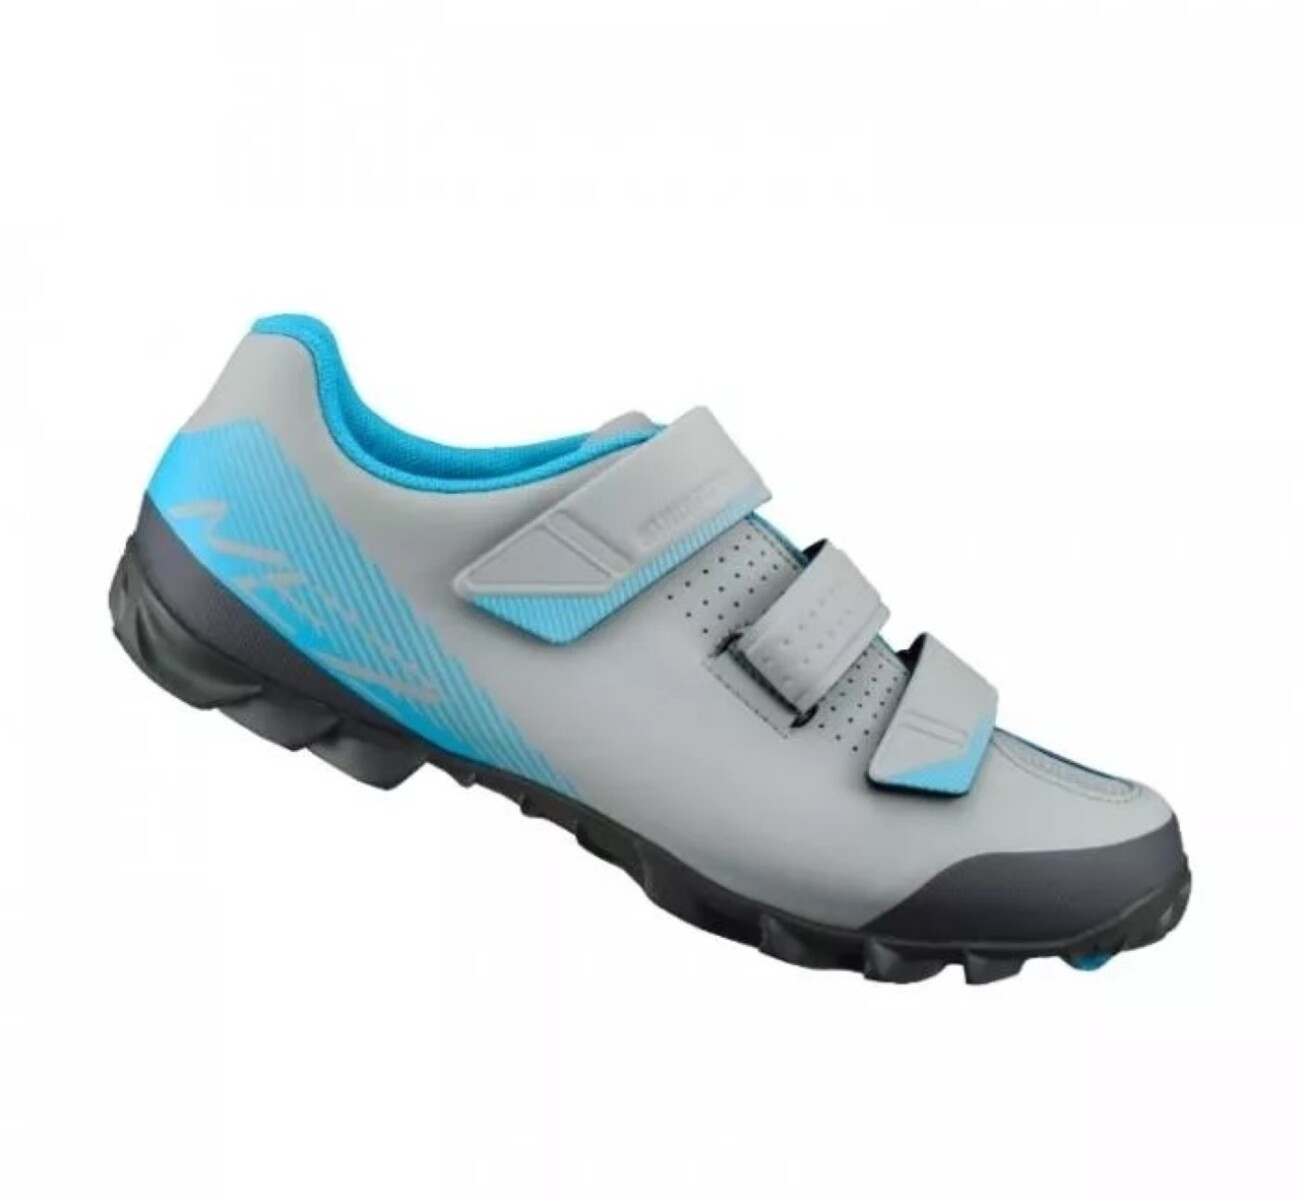 Zapatillas Shimano Me200 - Gris/azul 